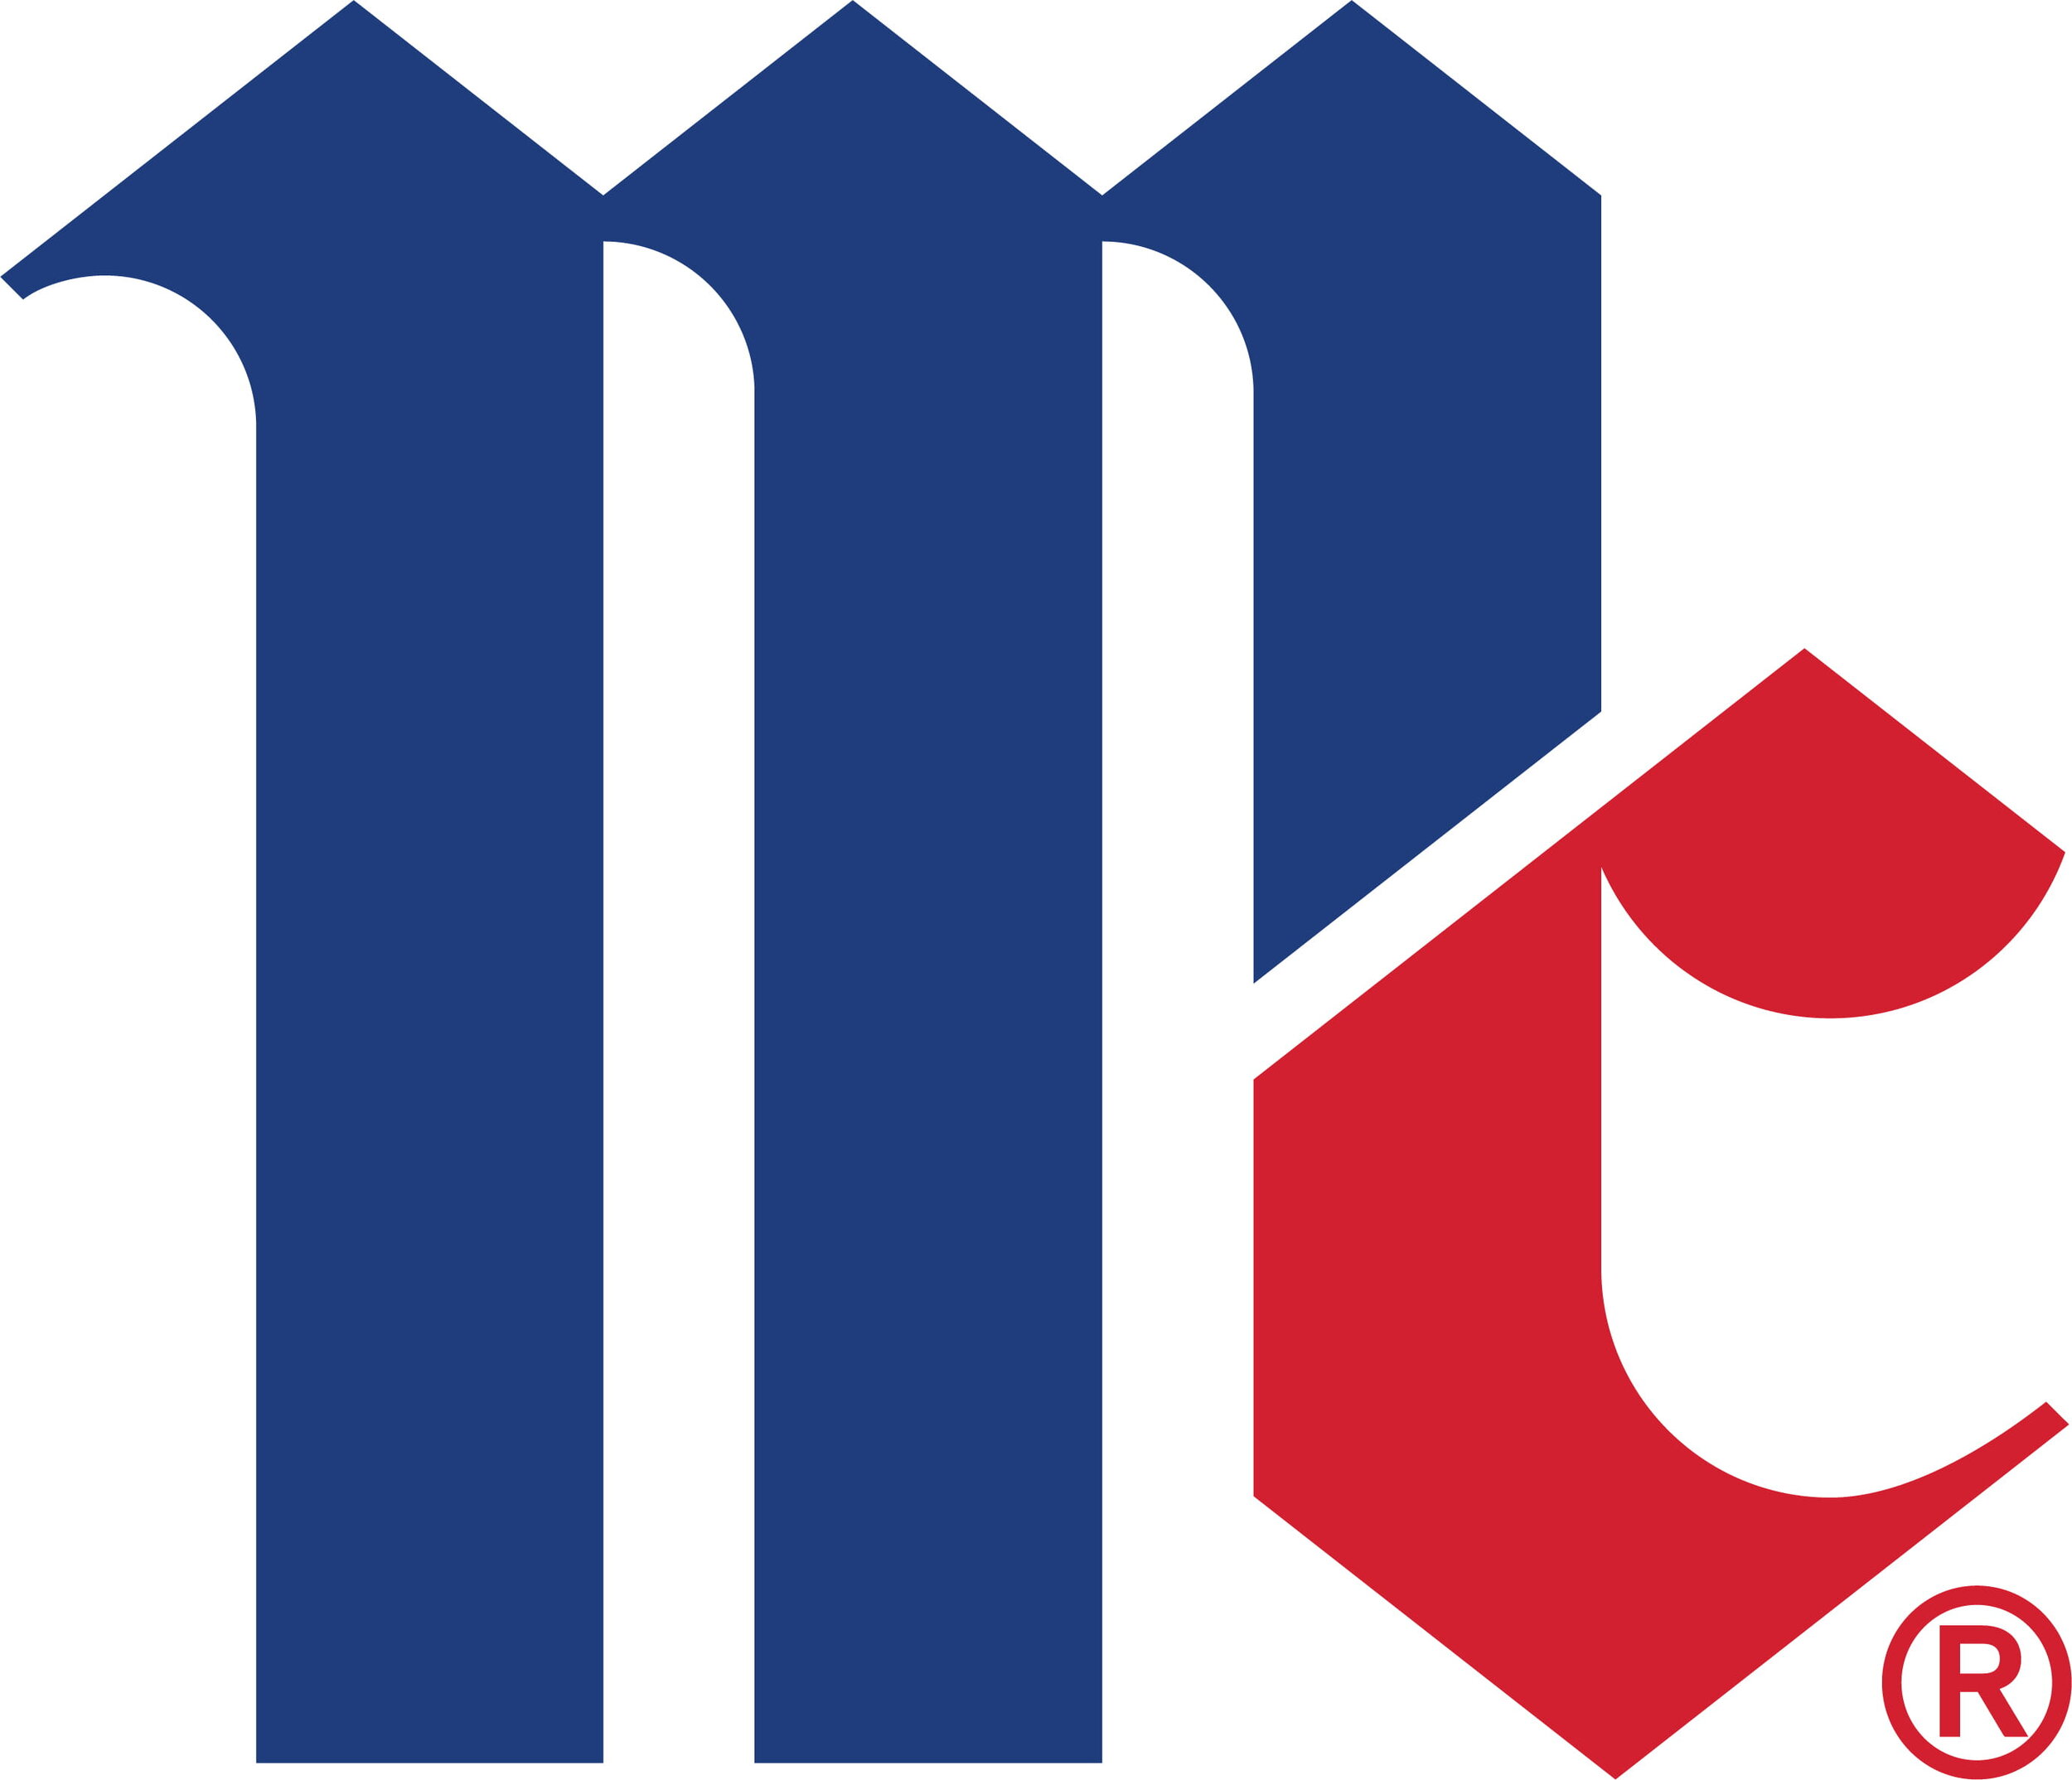 MCC_Primary-Logo_SPOT_JPG.jpg